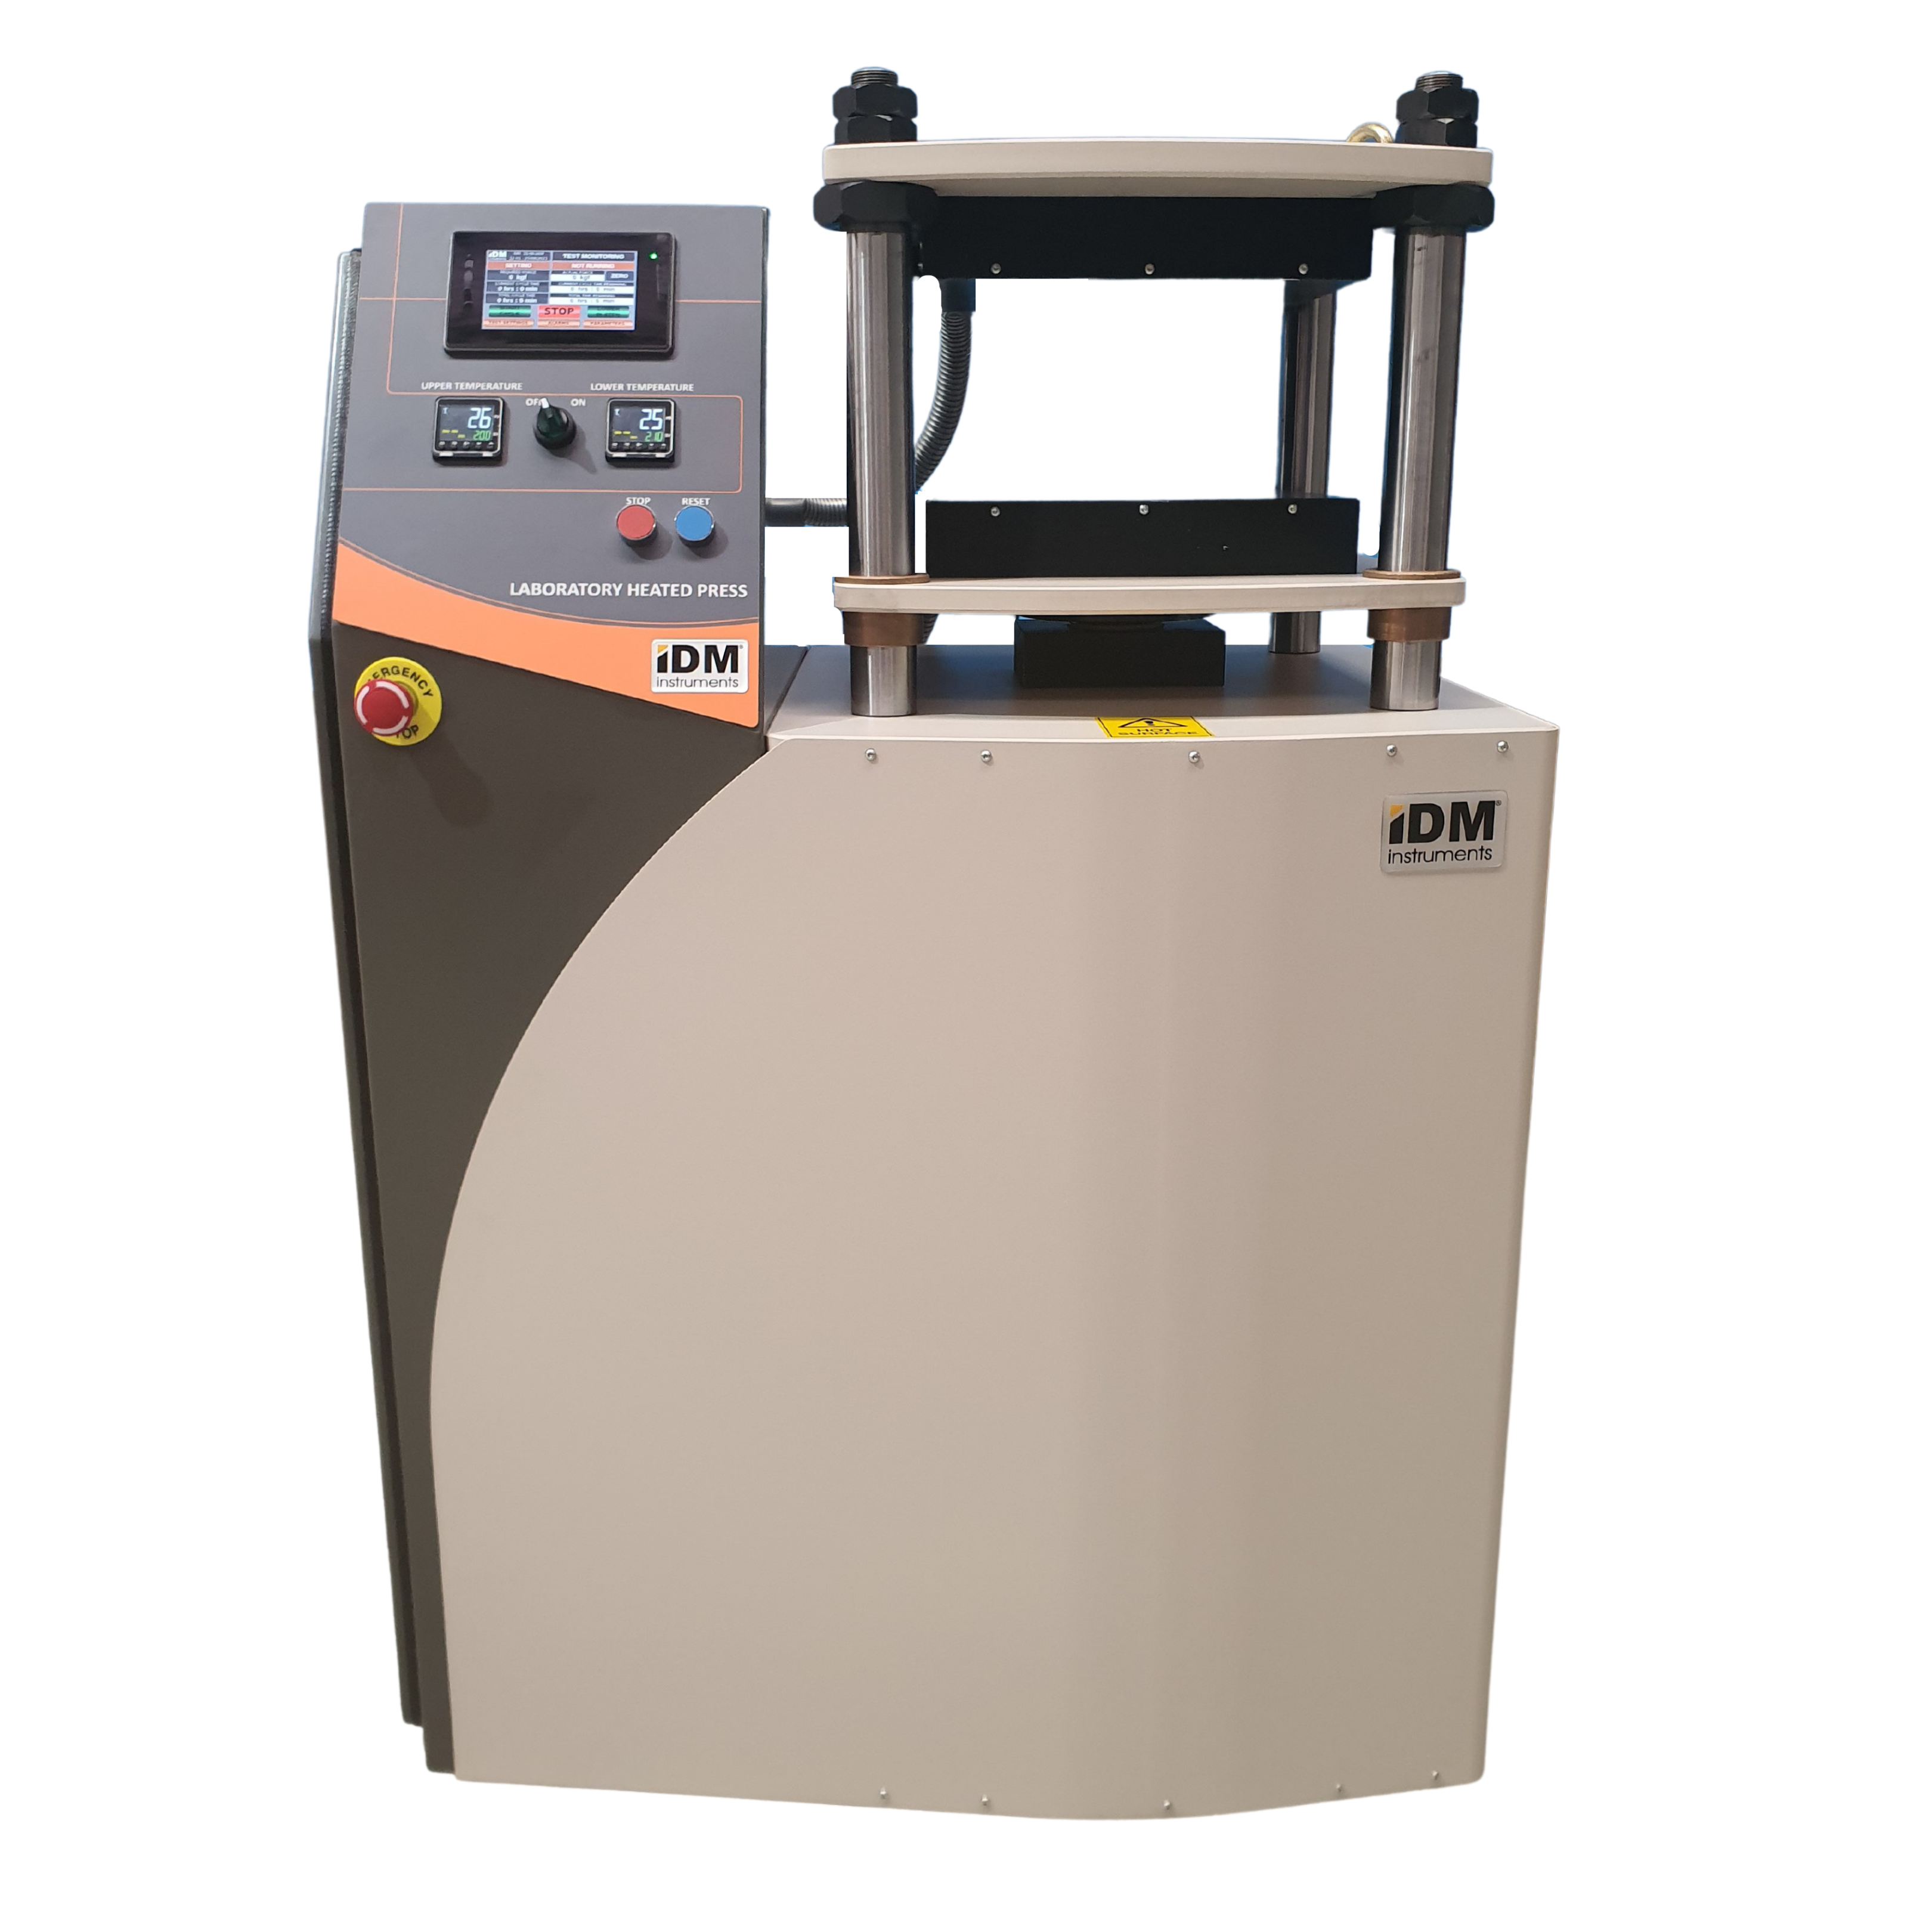 Laboratorium calefactum Press pro compositis materiis